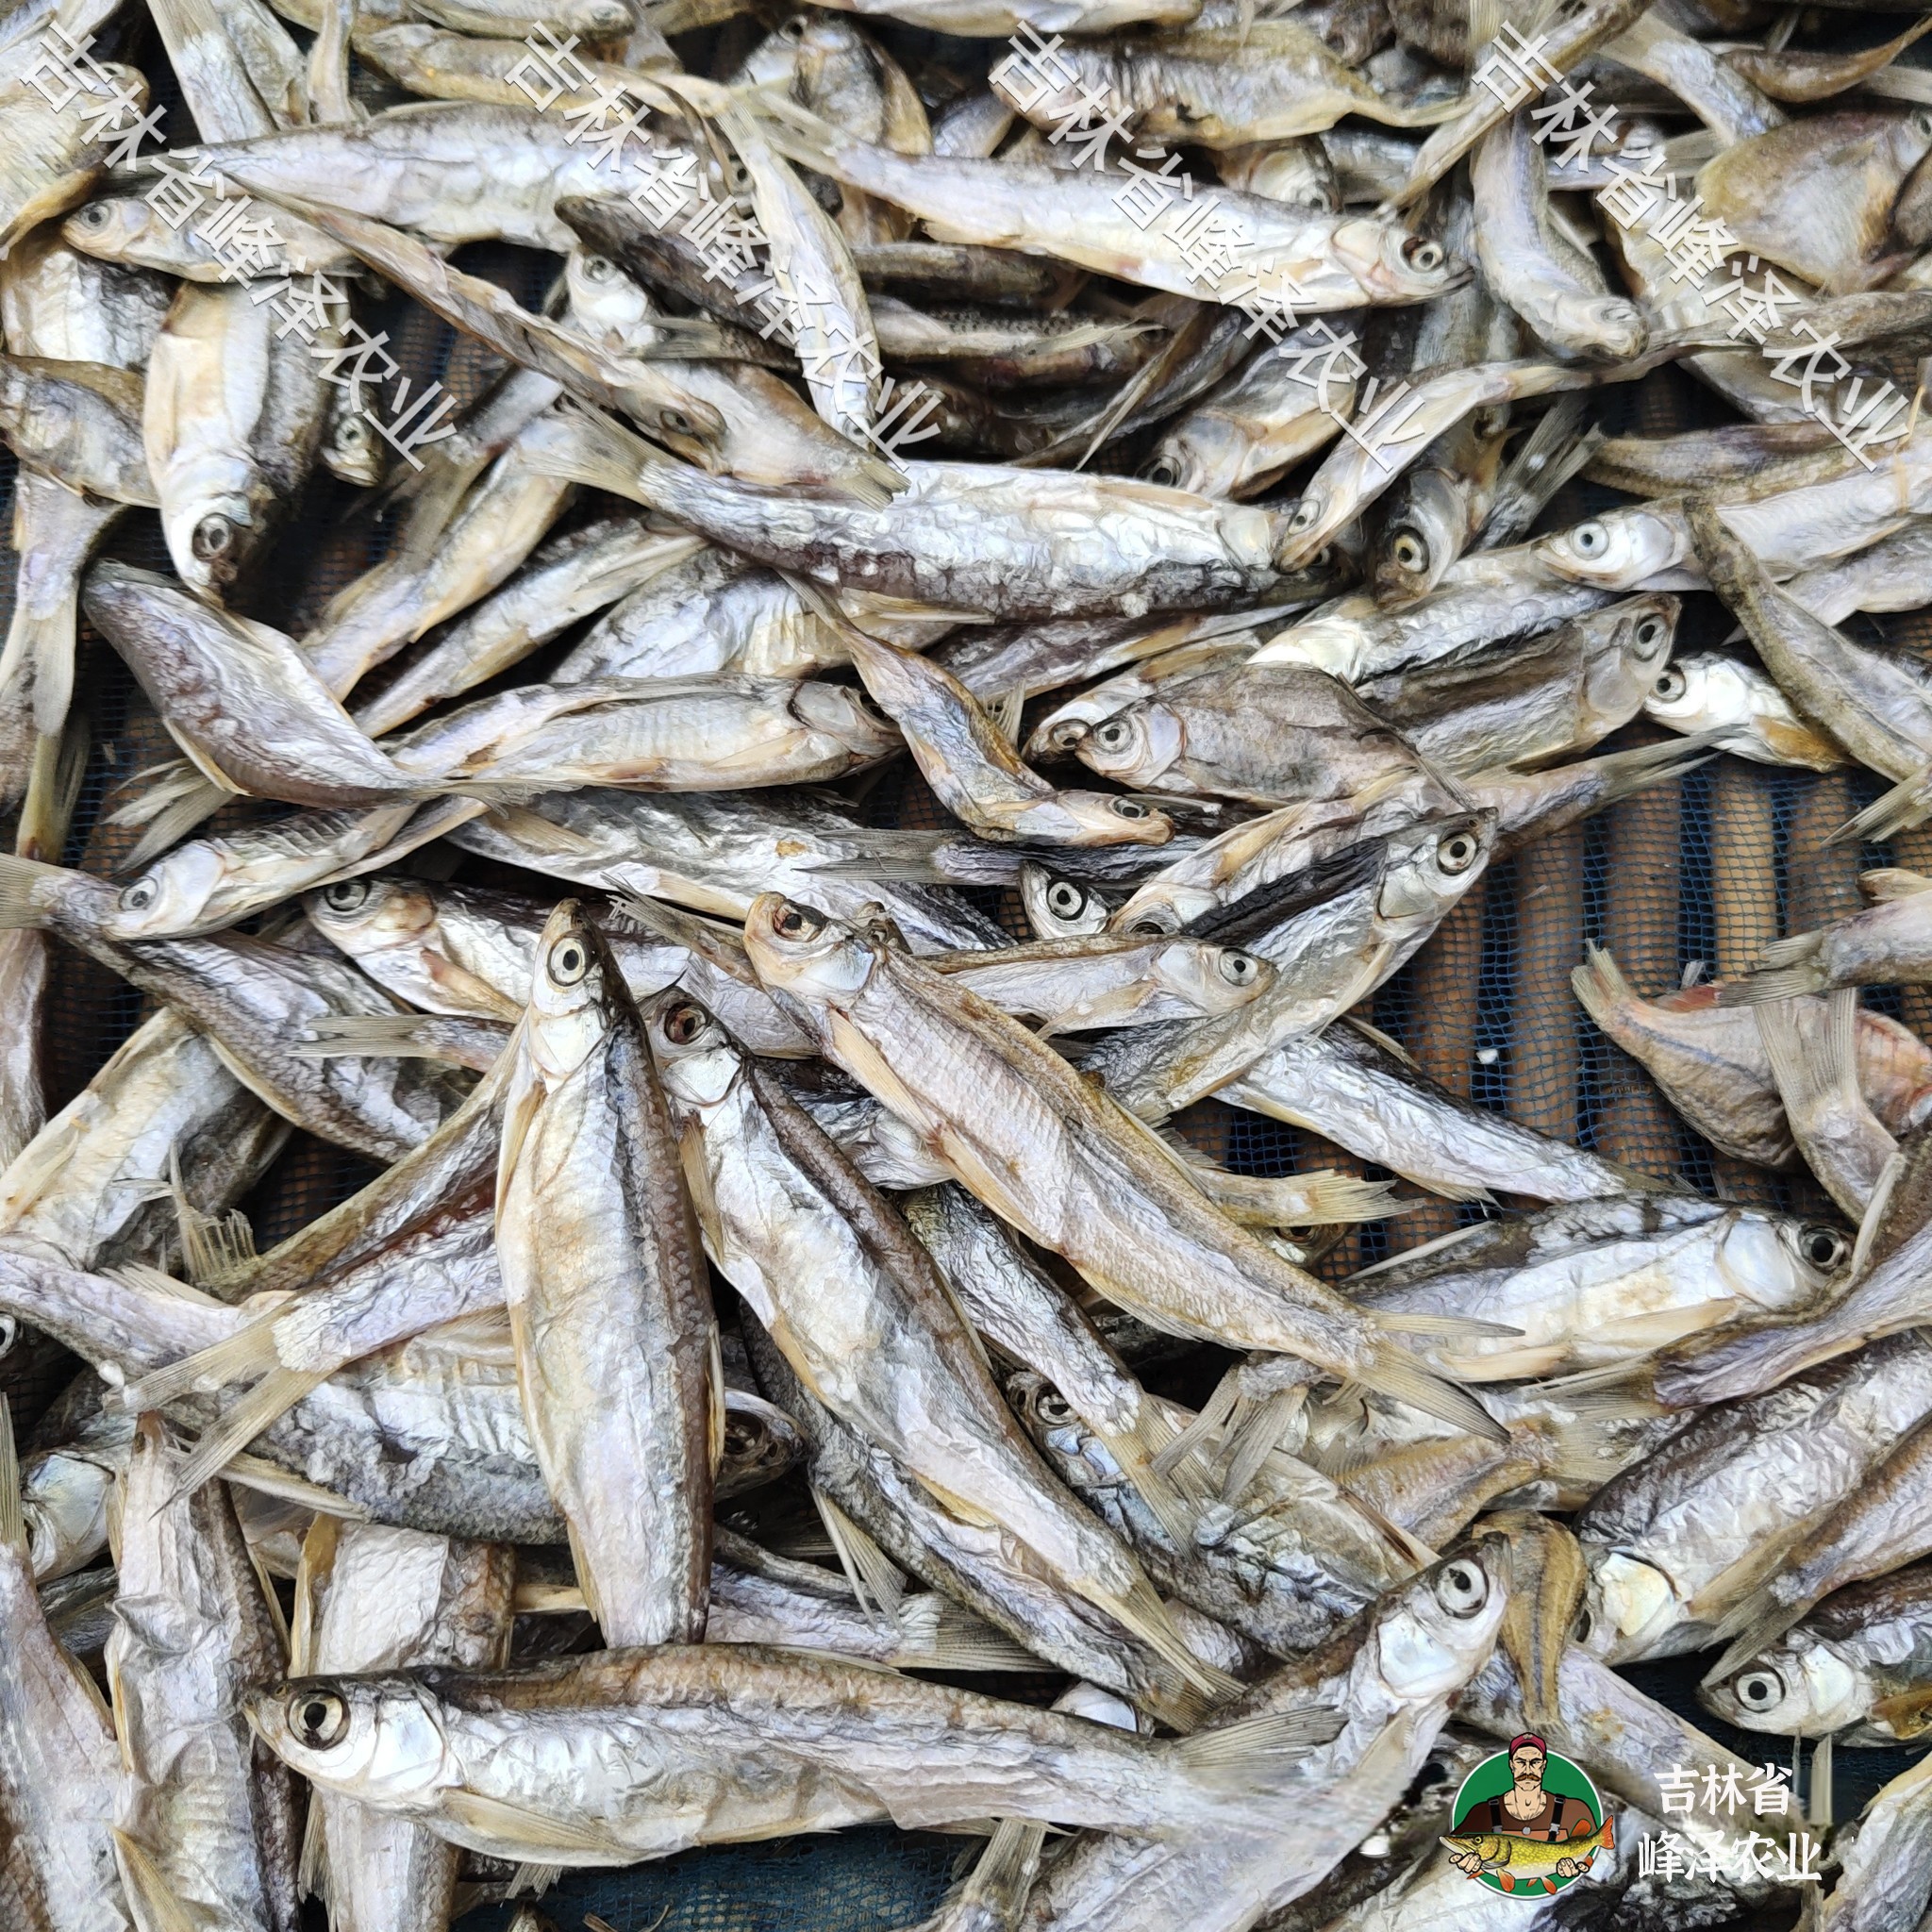 淡水小鱼干干货批发东北小鱼干产地厂家散装小河鱼干加工厂